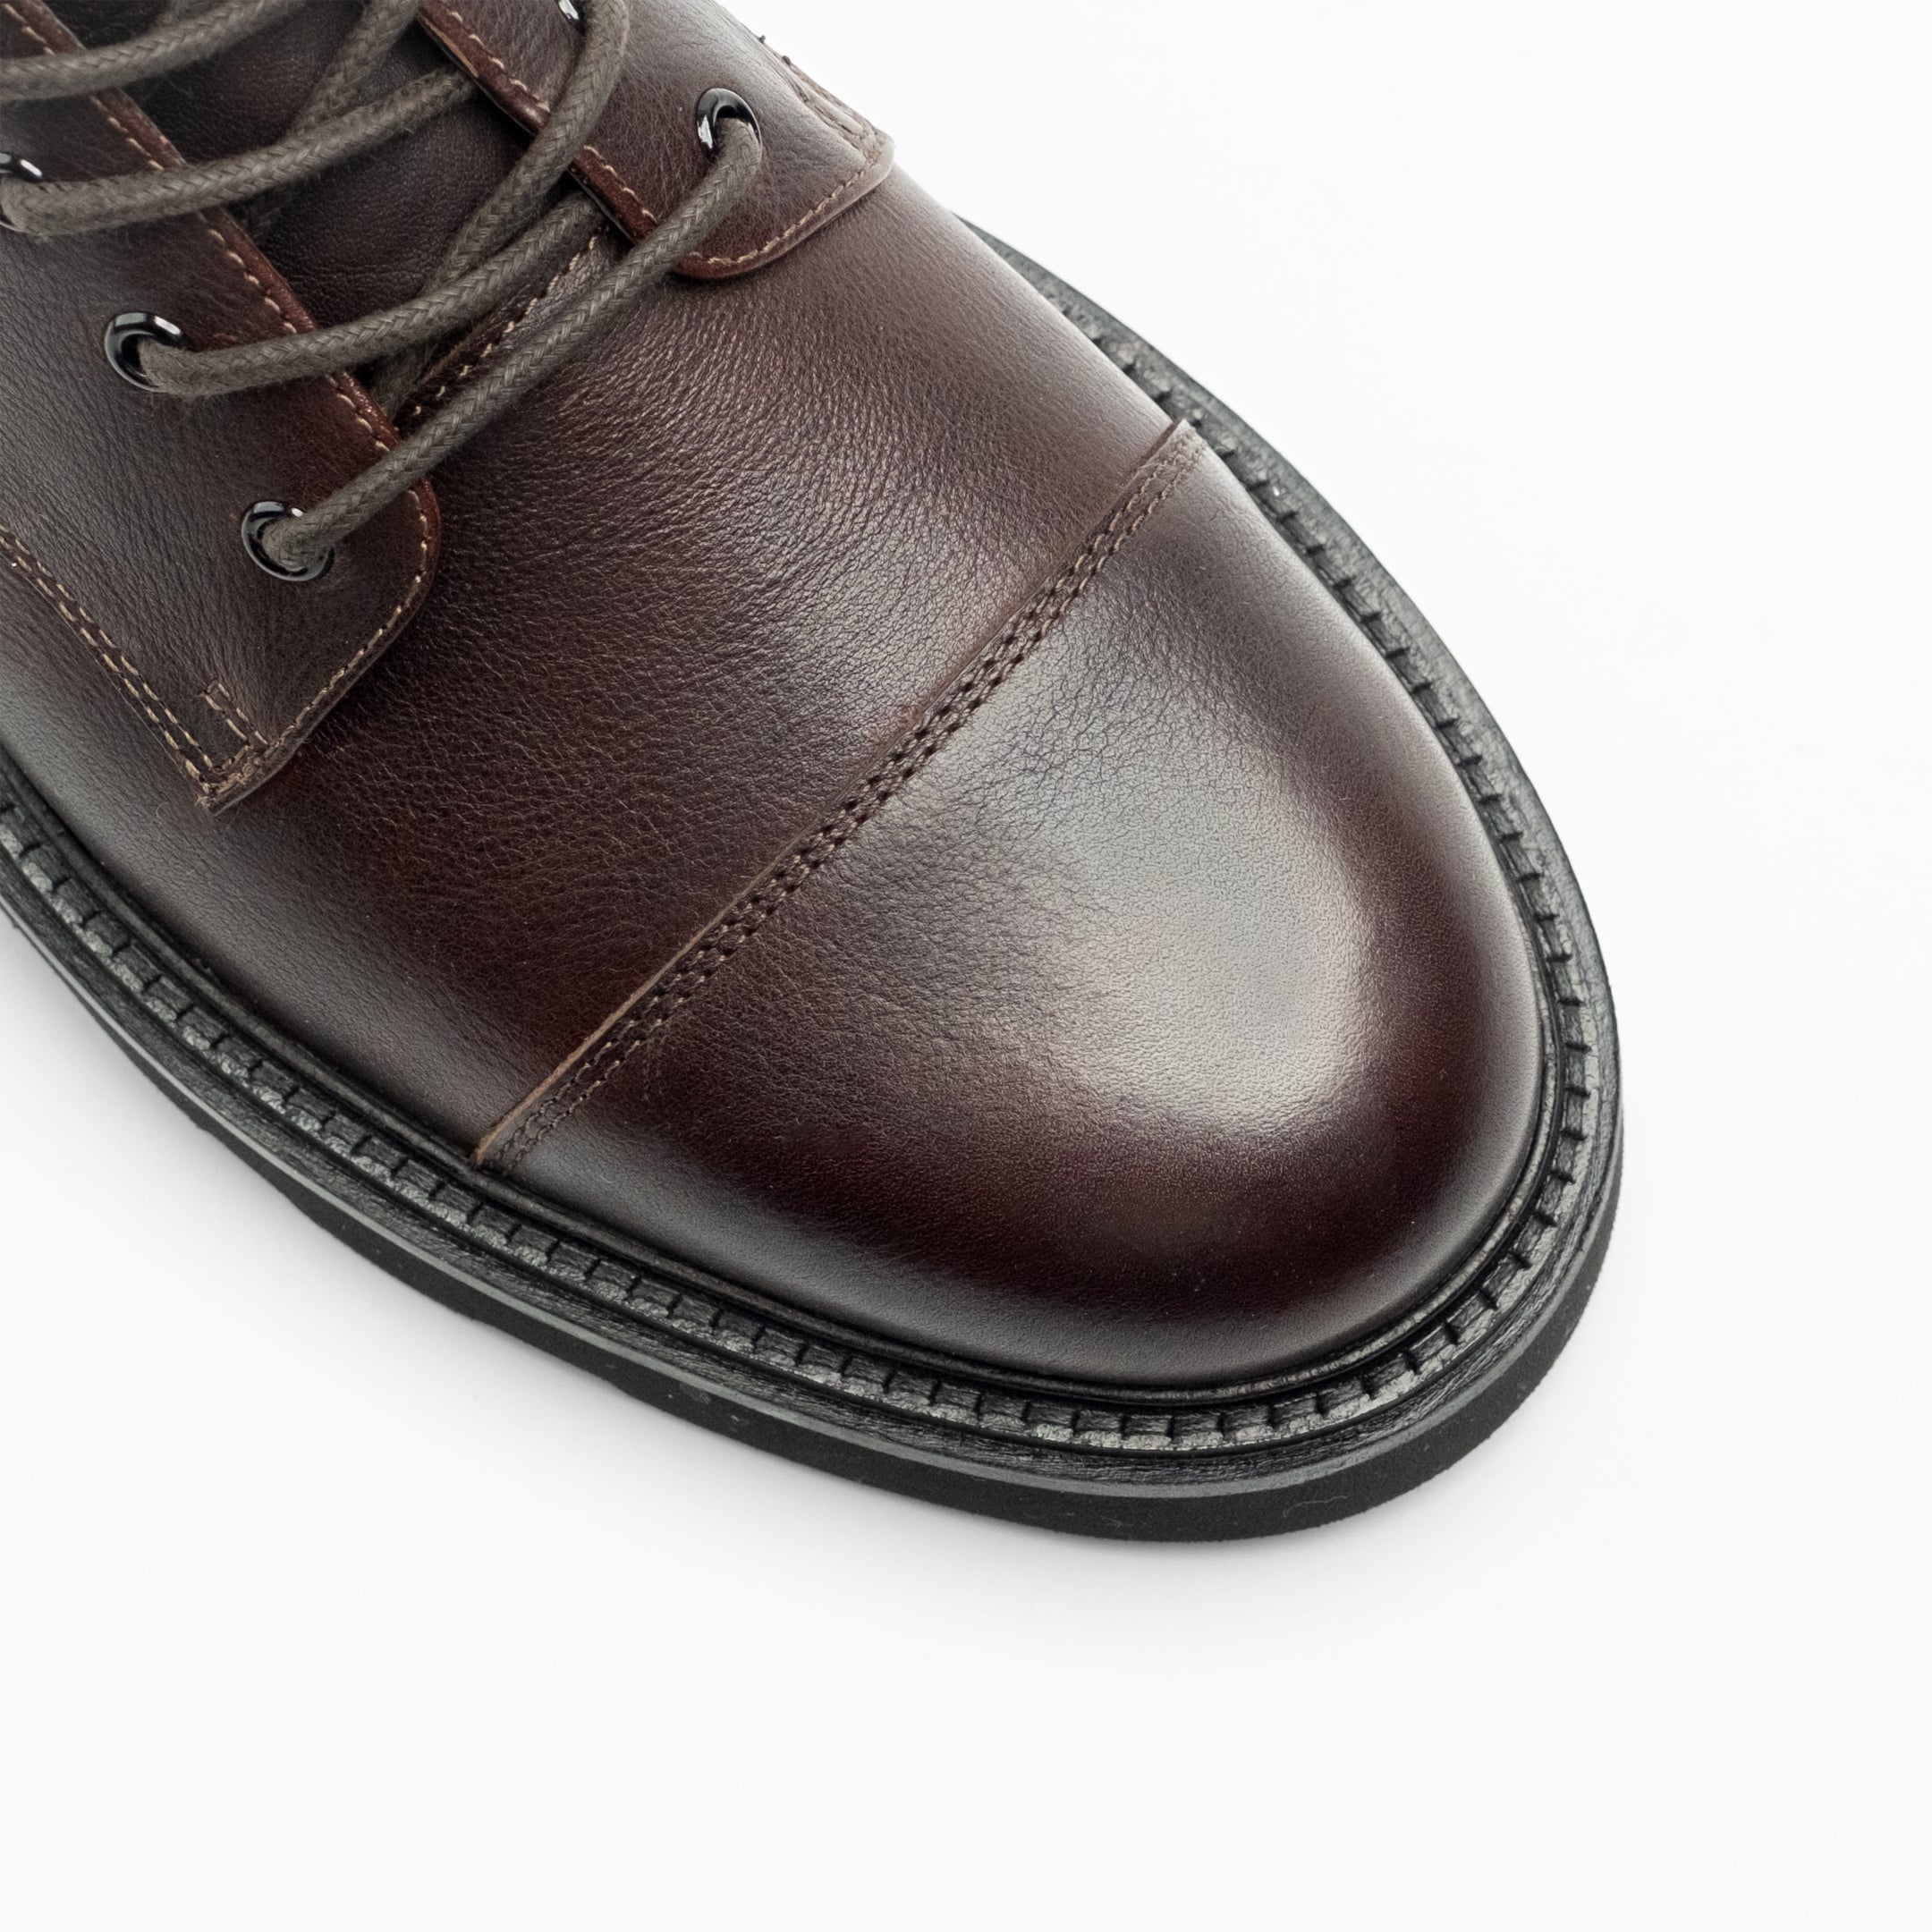 Walk London Mens - Max Toe Cap Boot - Brown Leather